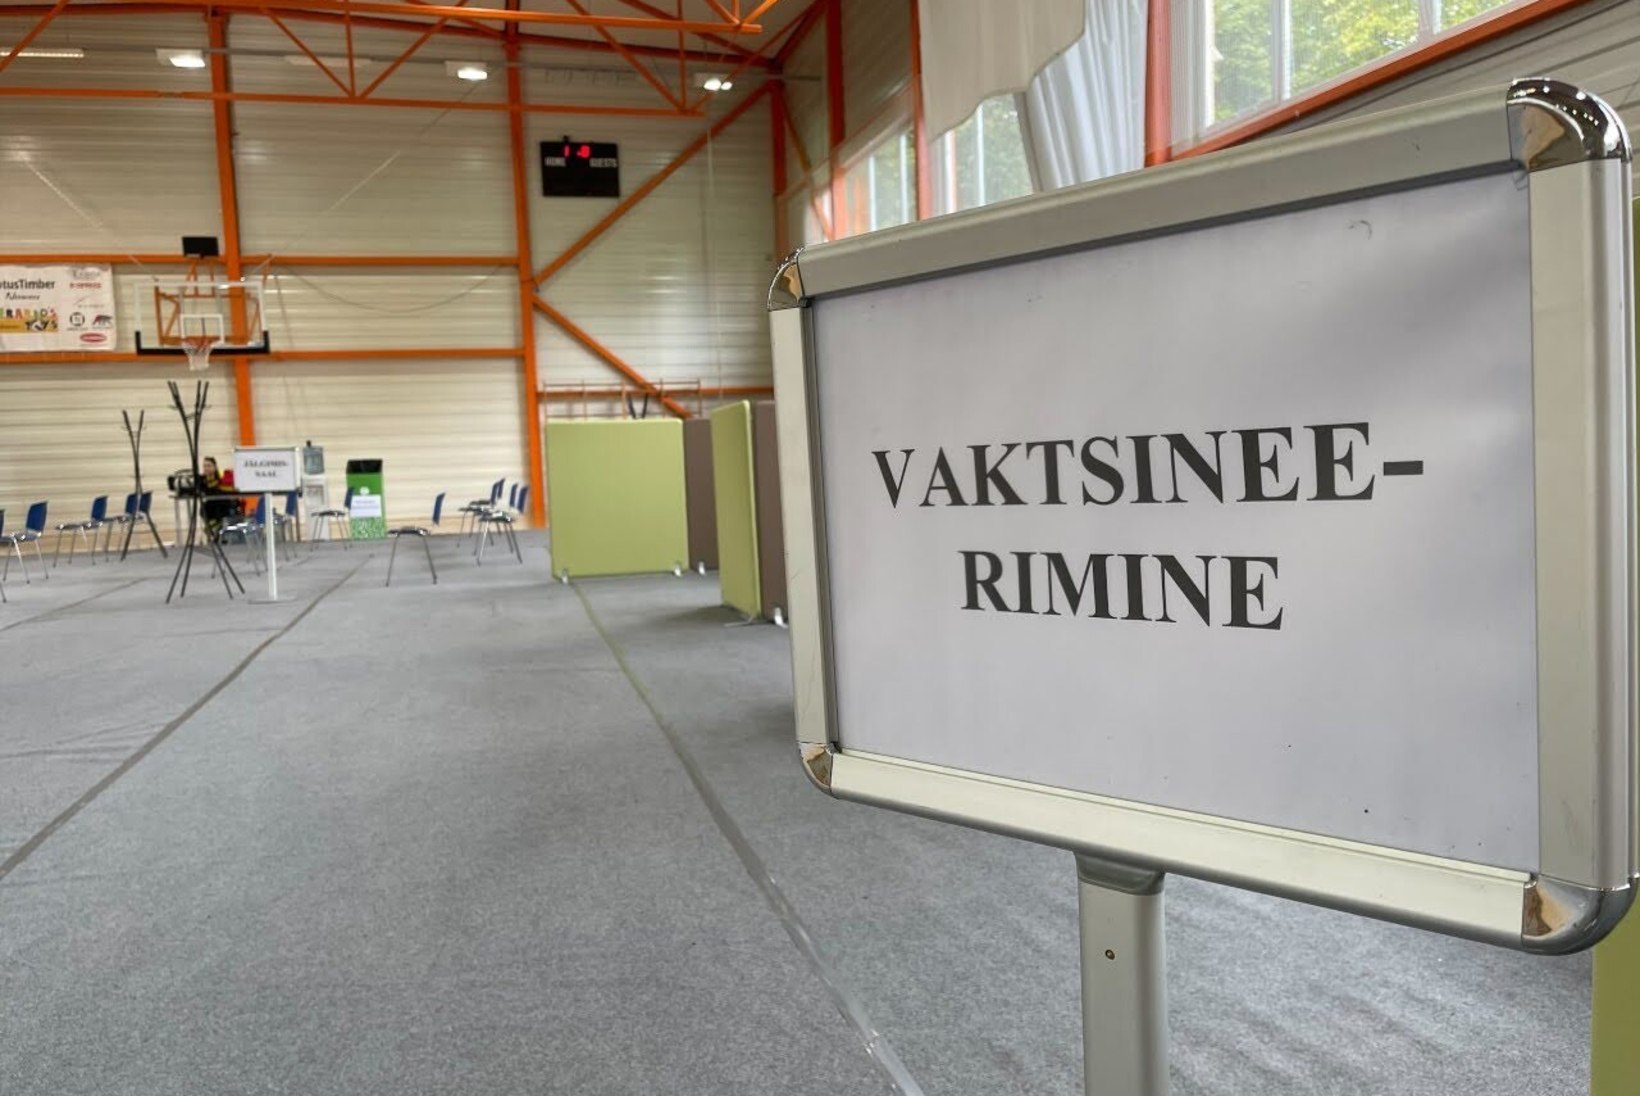 FOTOD | Kuues Tallinna gümnaasiumis vaktsineeriti päeva esimeses pooles ligi 400 inimest